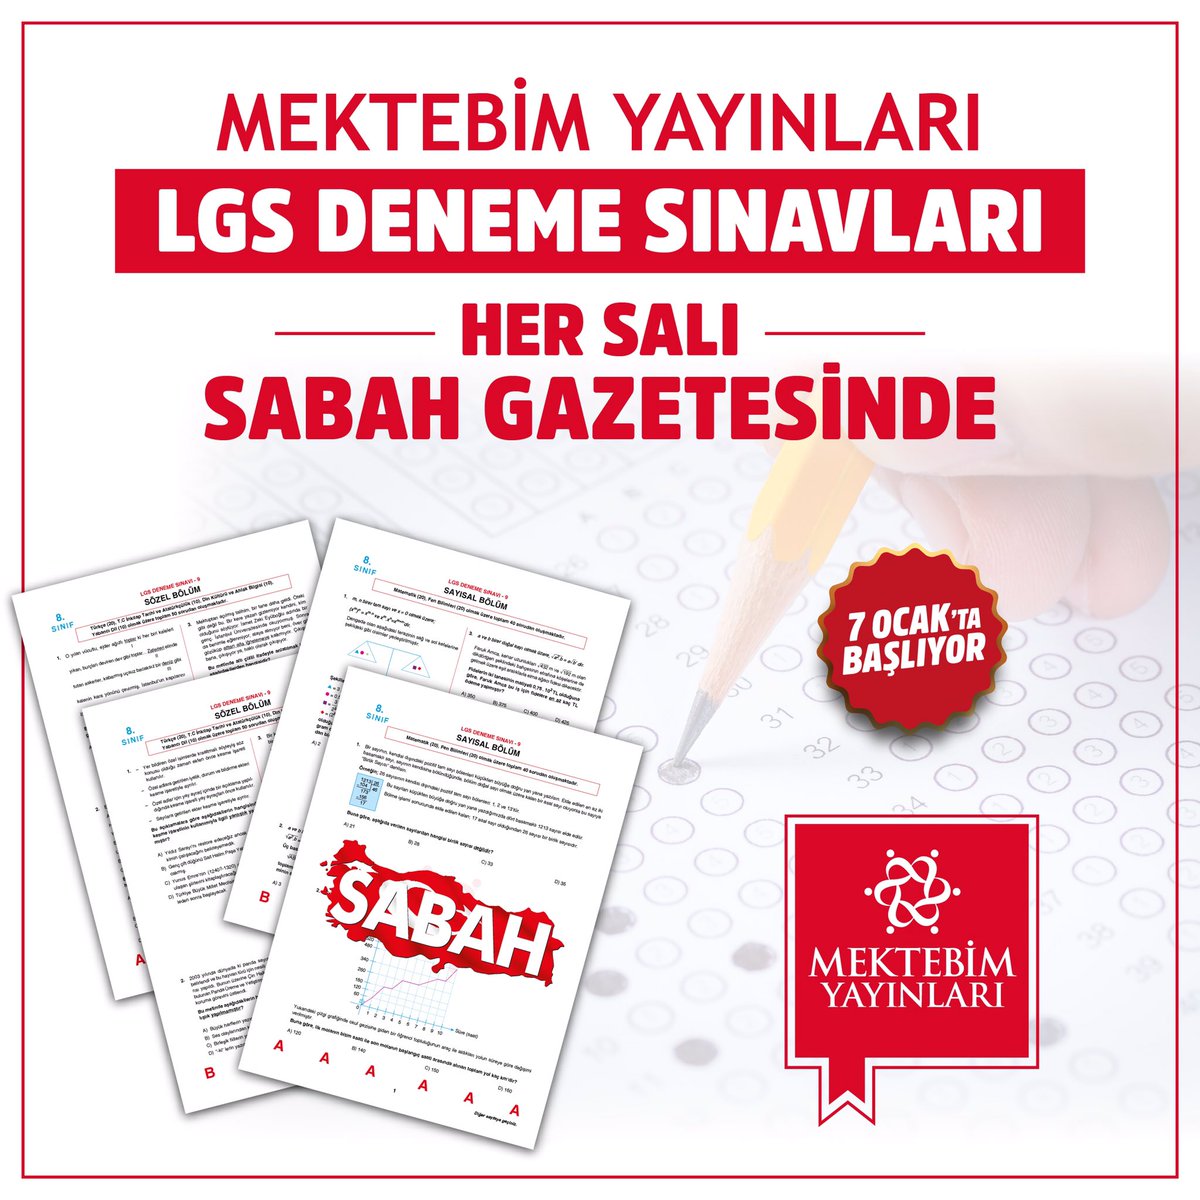 Mektebim Yayınlarının hazırladığı “LGS Deneme Sınavı” 7 Ocak’tan itibaren her salı Sabah Gazetesinde.
#MektebimKoleji #SabahGazetesi